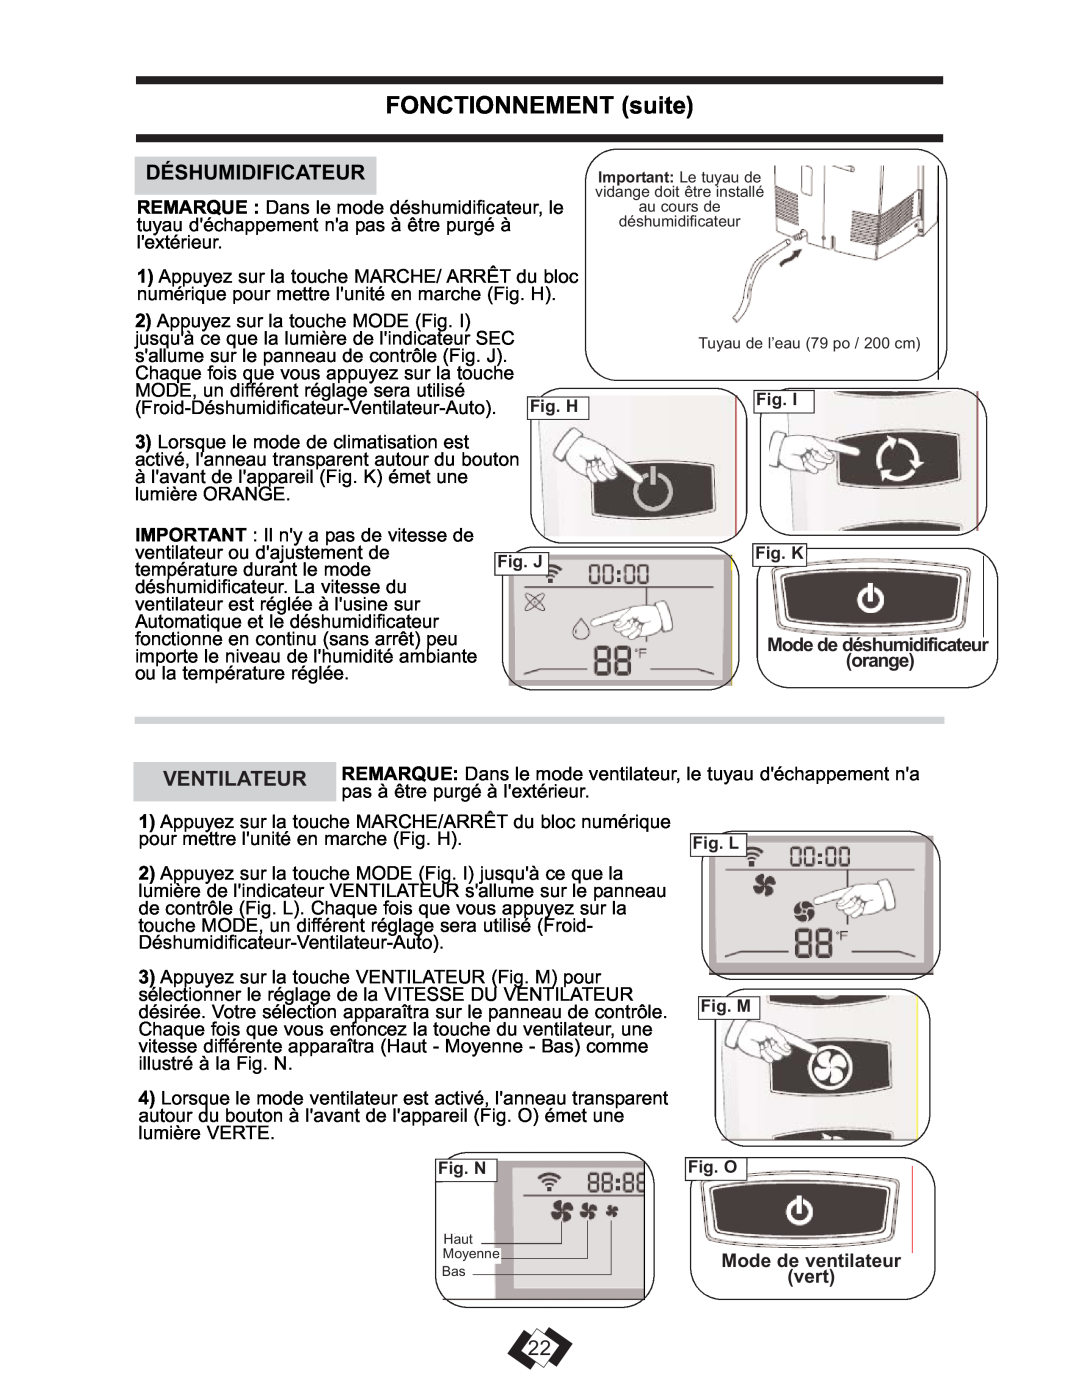 Danby DPAC 13009 operating instructions FONCTIONNEMENT suite, Ventilateur, Mode de ventilateur vert 